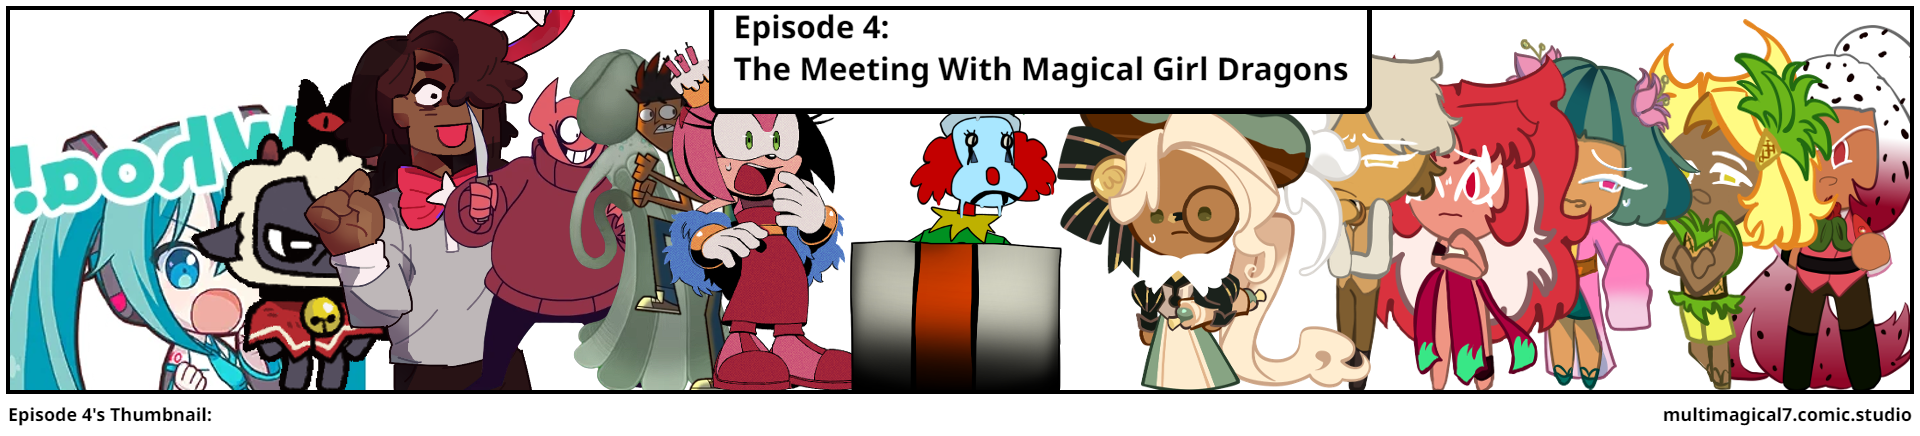 Episode 4's Thumbnail: